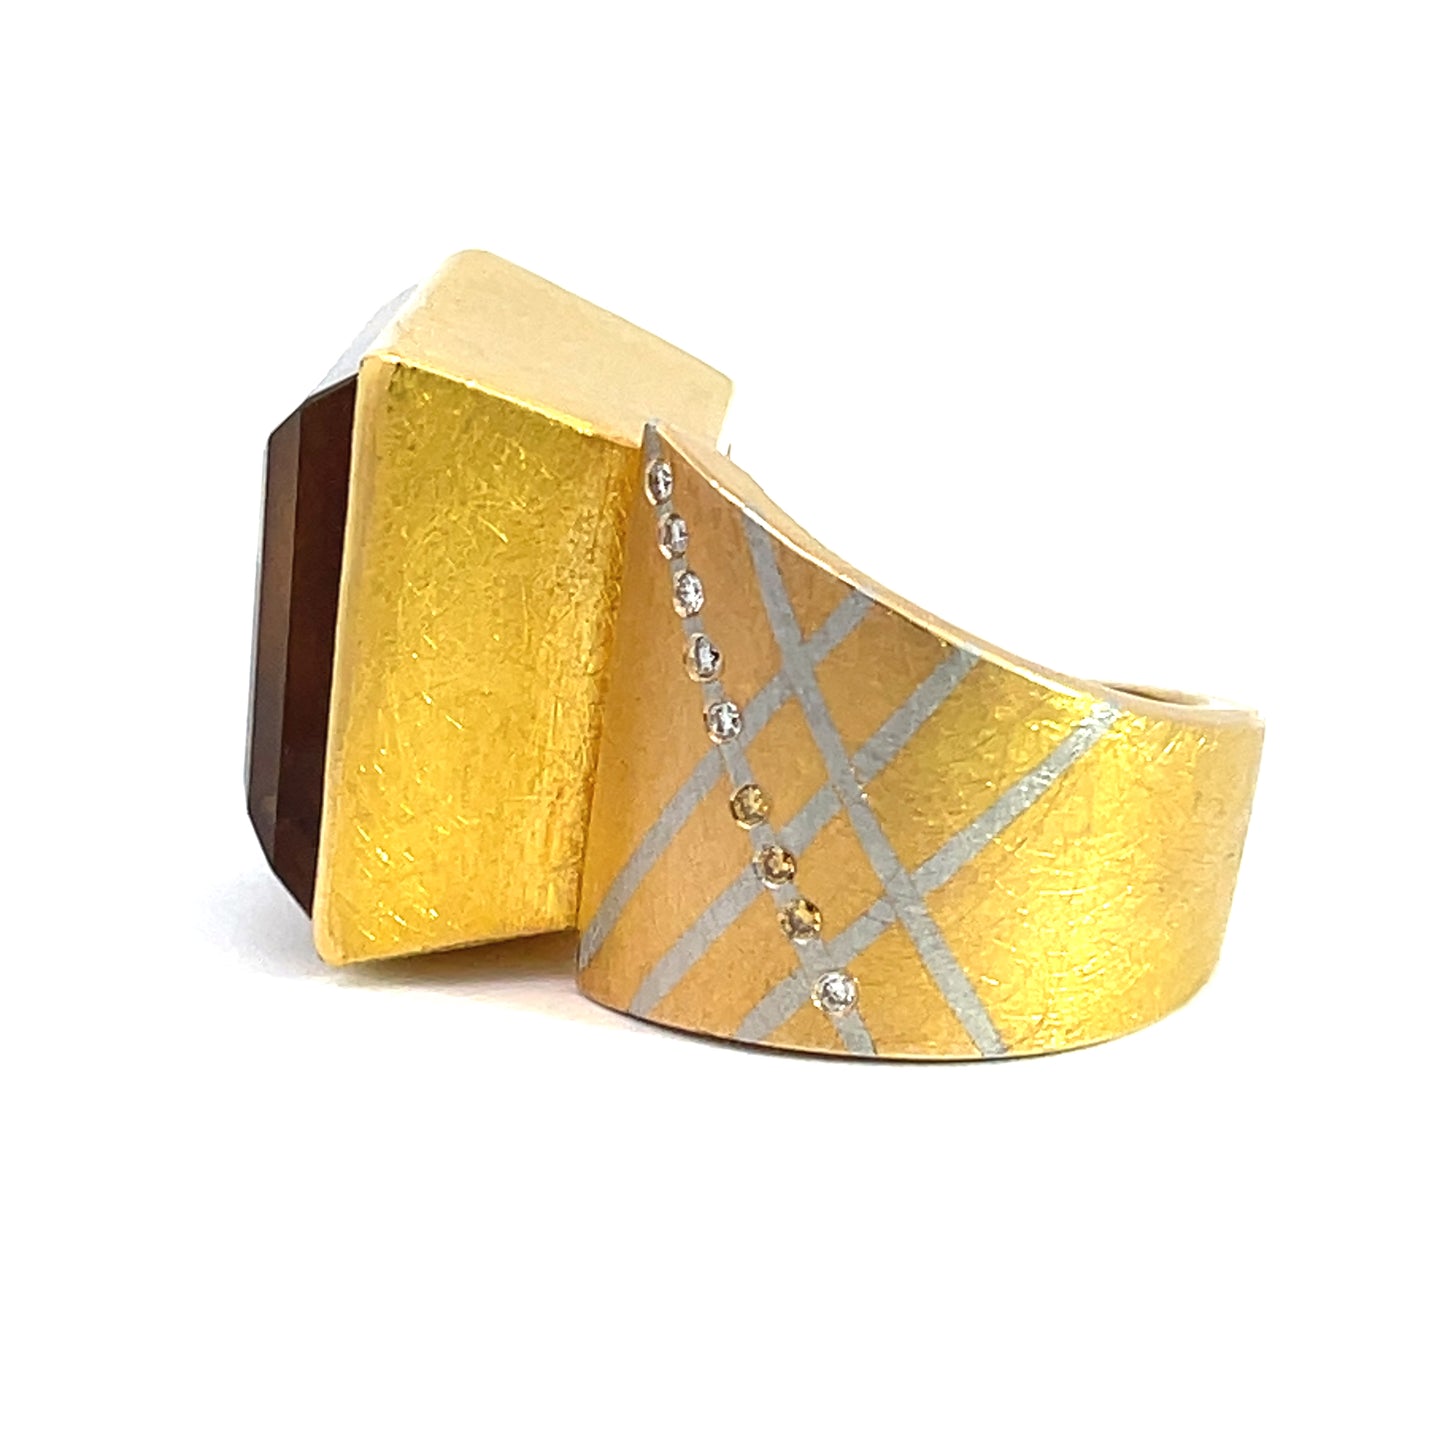 18k Yellow Gold and Platnium Citrine and Diamond Ring